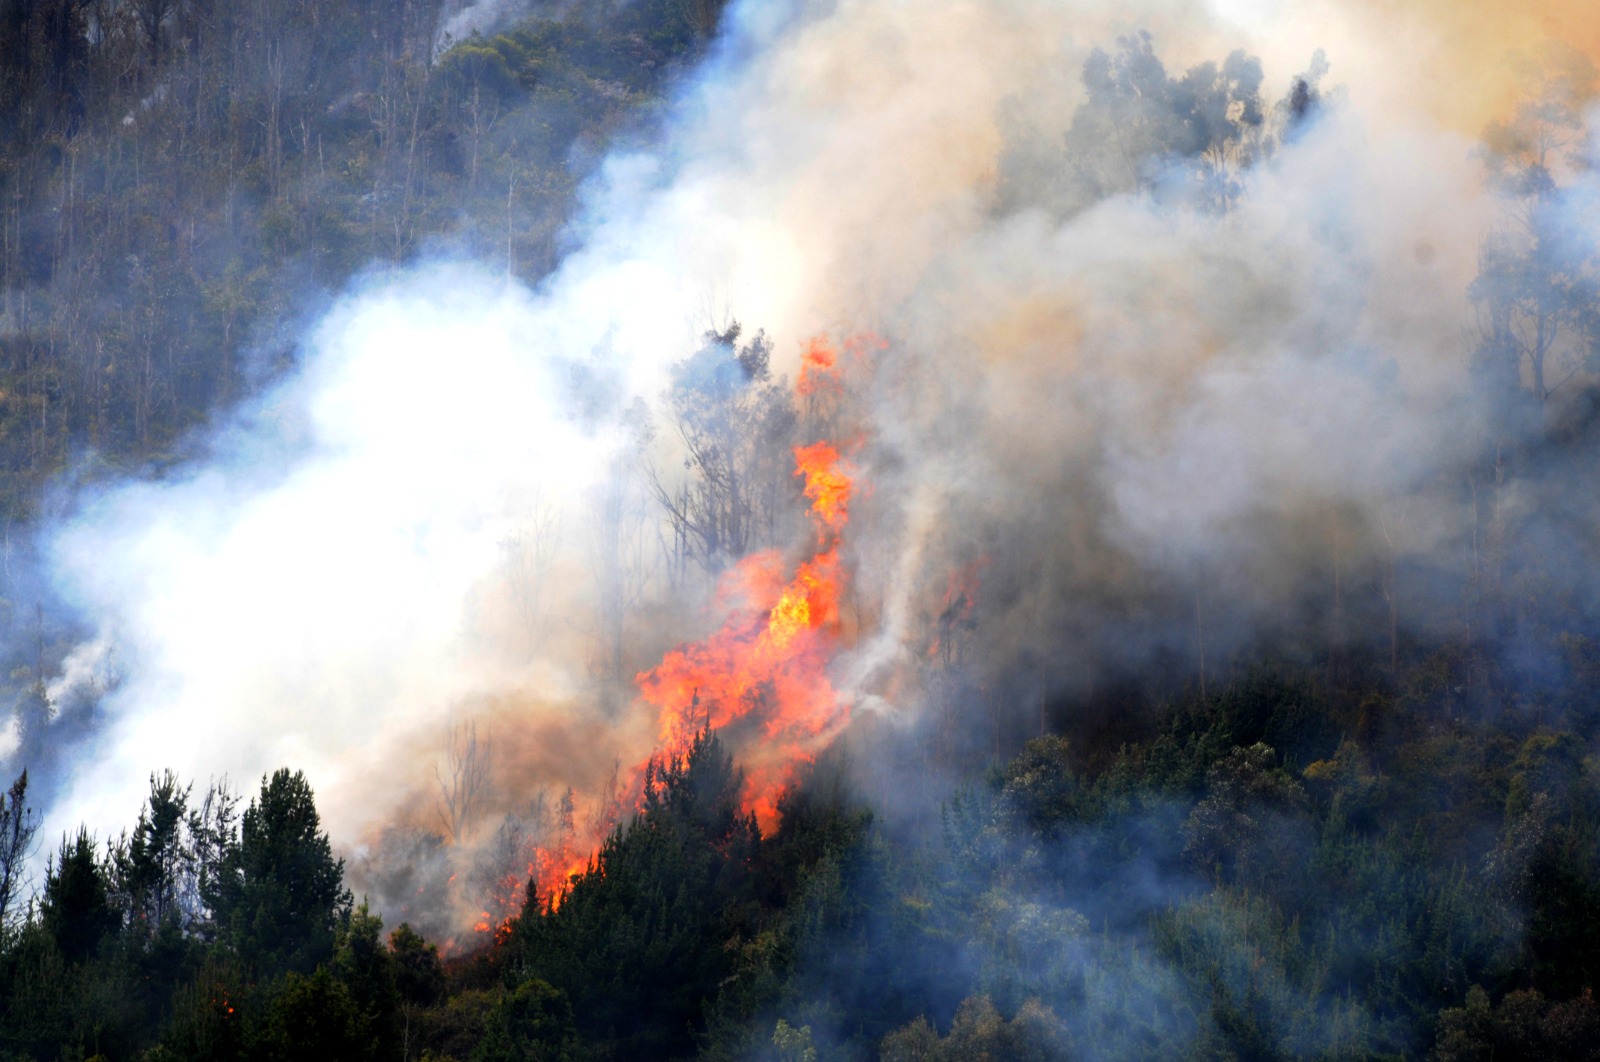 Gobierno cundinamarqués atiende emergencias causadas por incendios forestales

